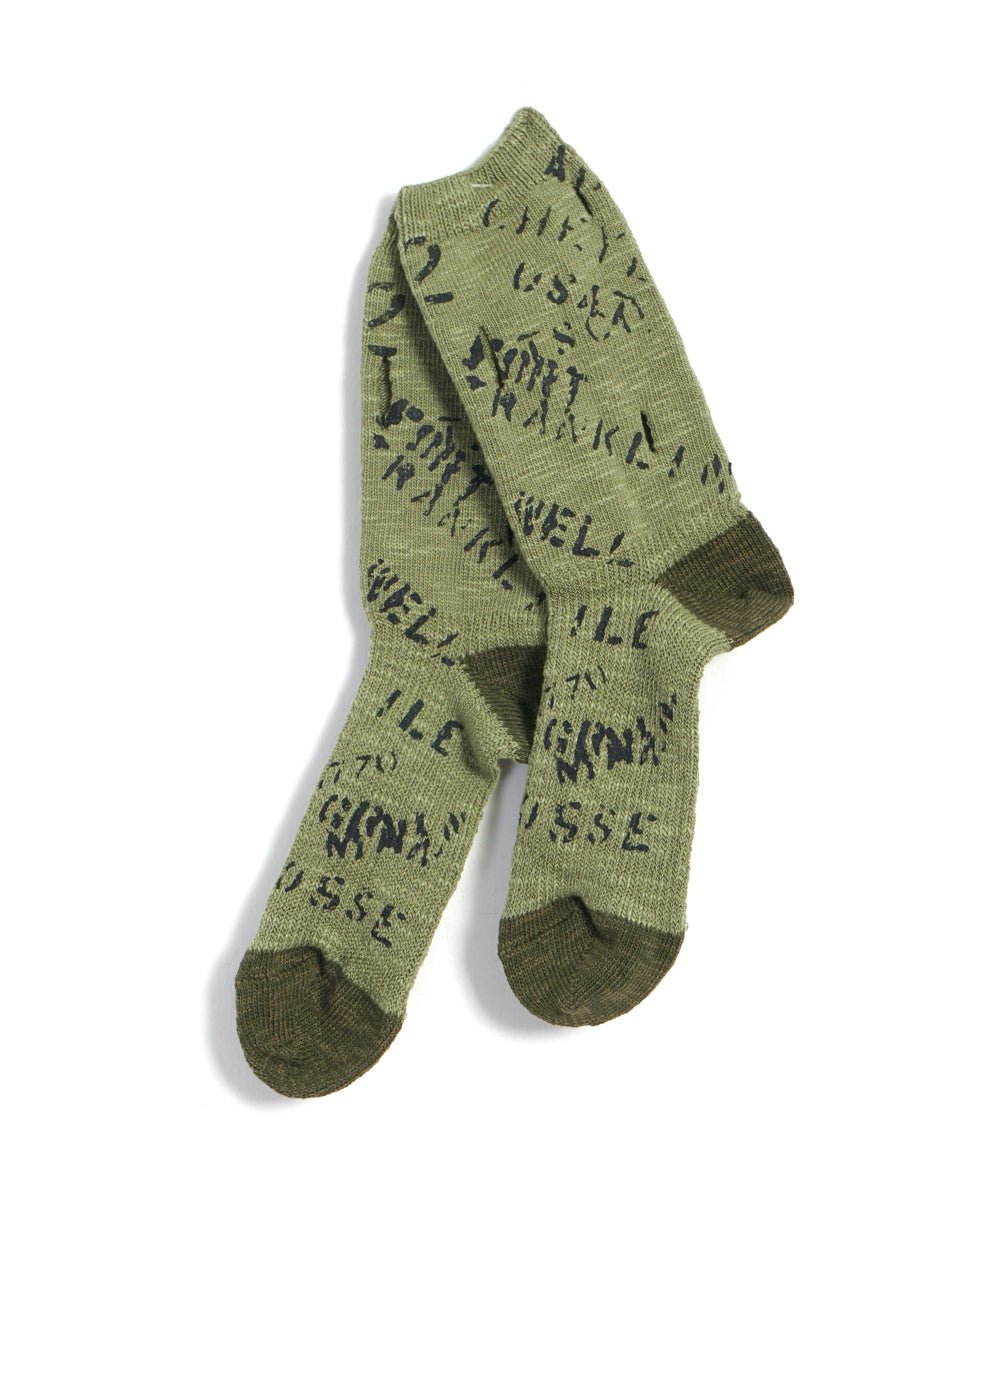 KAPITAL - ARMY | 96 Yarns Graffiti Hole-Punched Socks | Khaki - HANSEN Garments